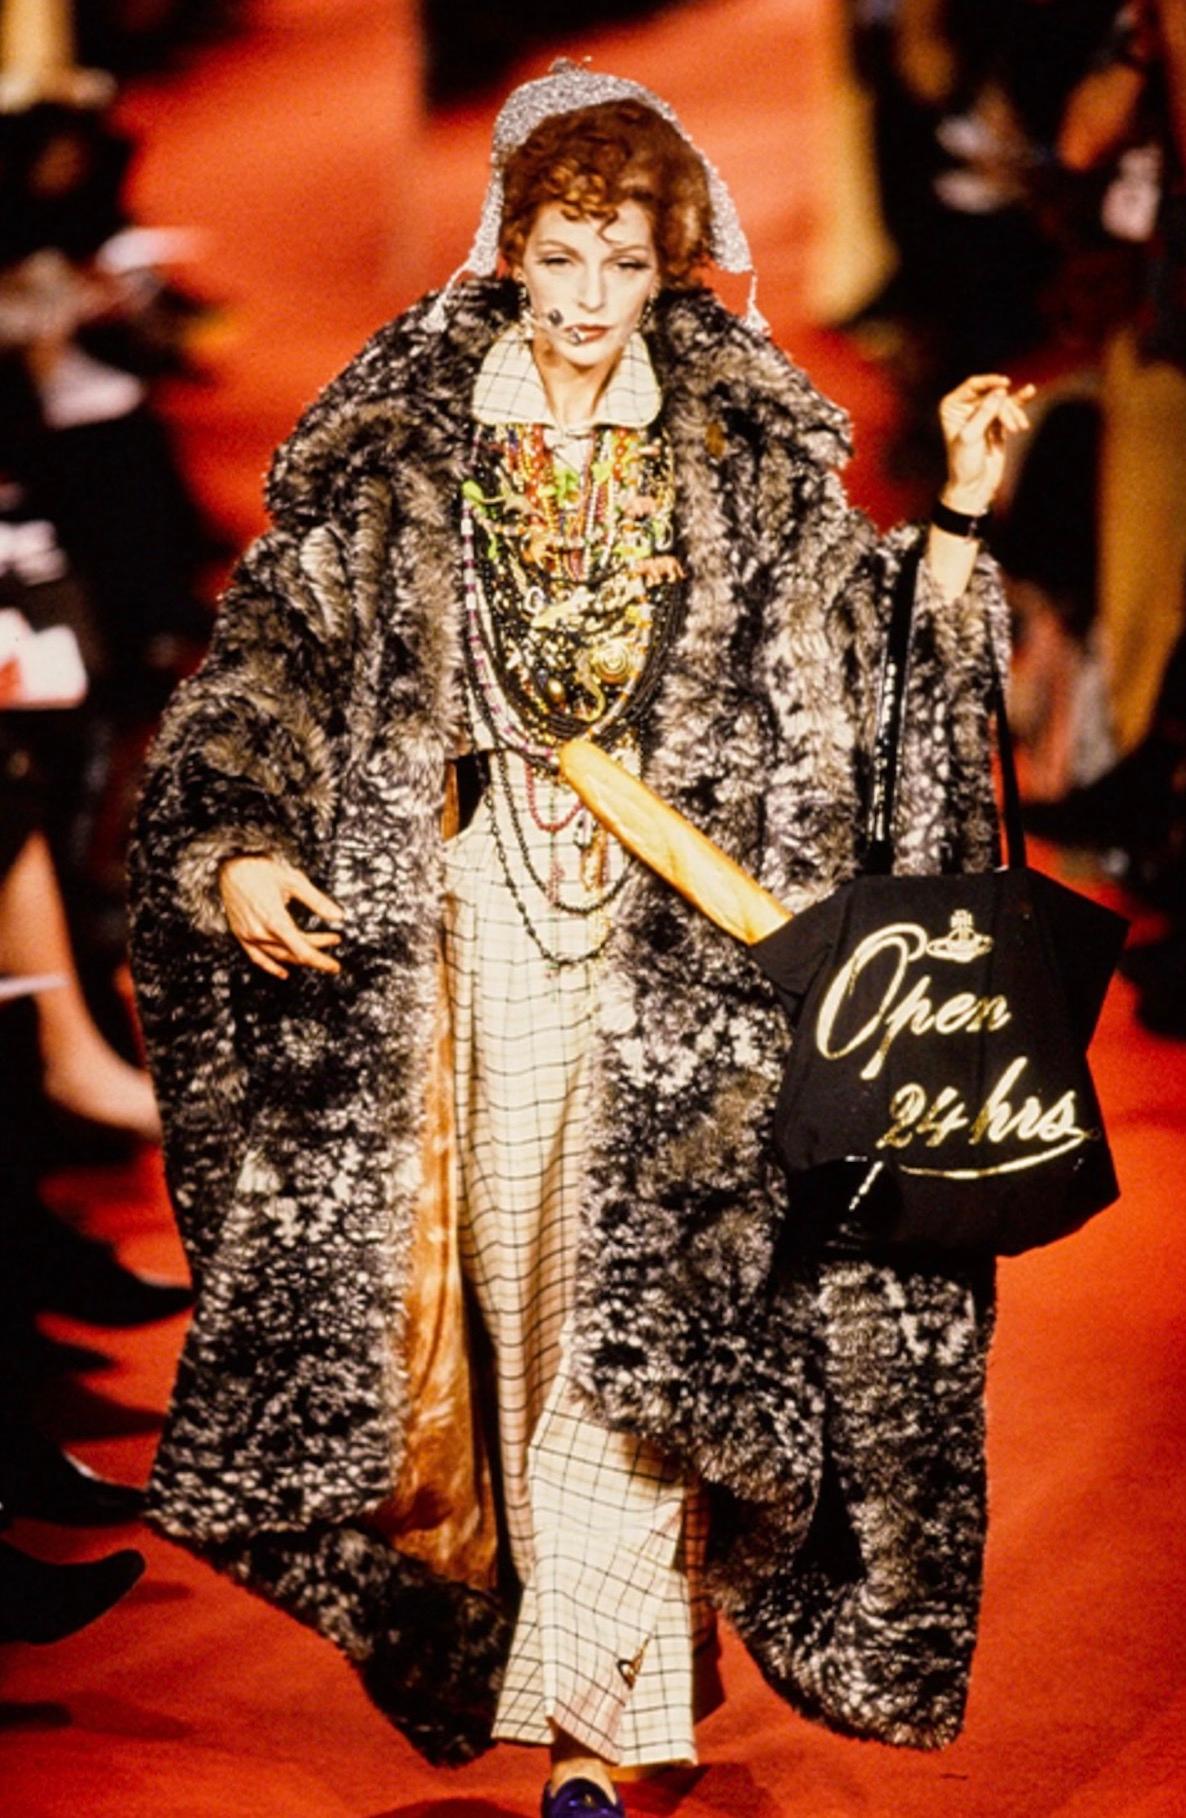 Vivienne Westwood Holy Grail
Une pièce d'histoire de la mode digne d'un musée

Tailleur Vivienne Westwood FW1993 extrêmement rare ! La signature de cette Collectional ! Superbe costume trois pièces : chemise, pantalon et ceinture. La chemise (ou la